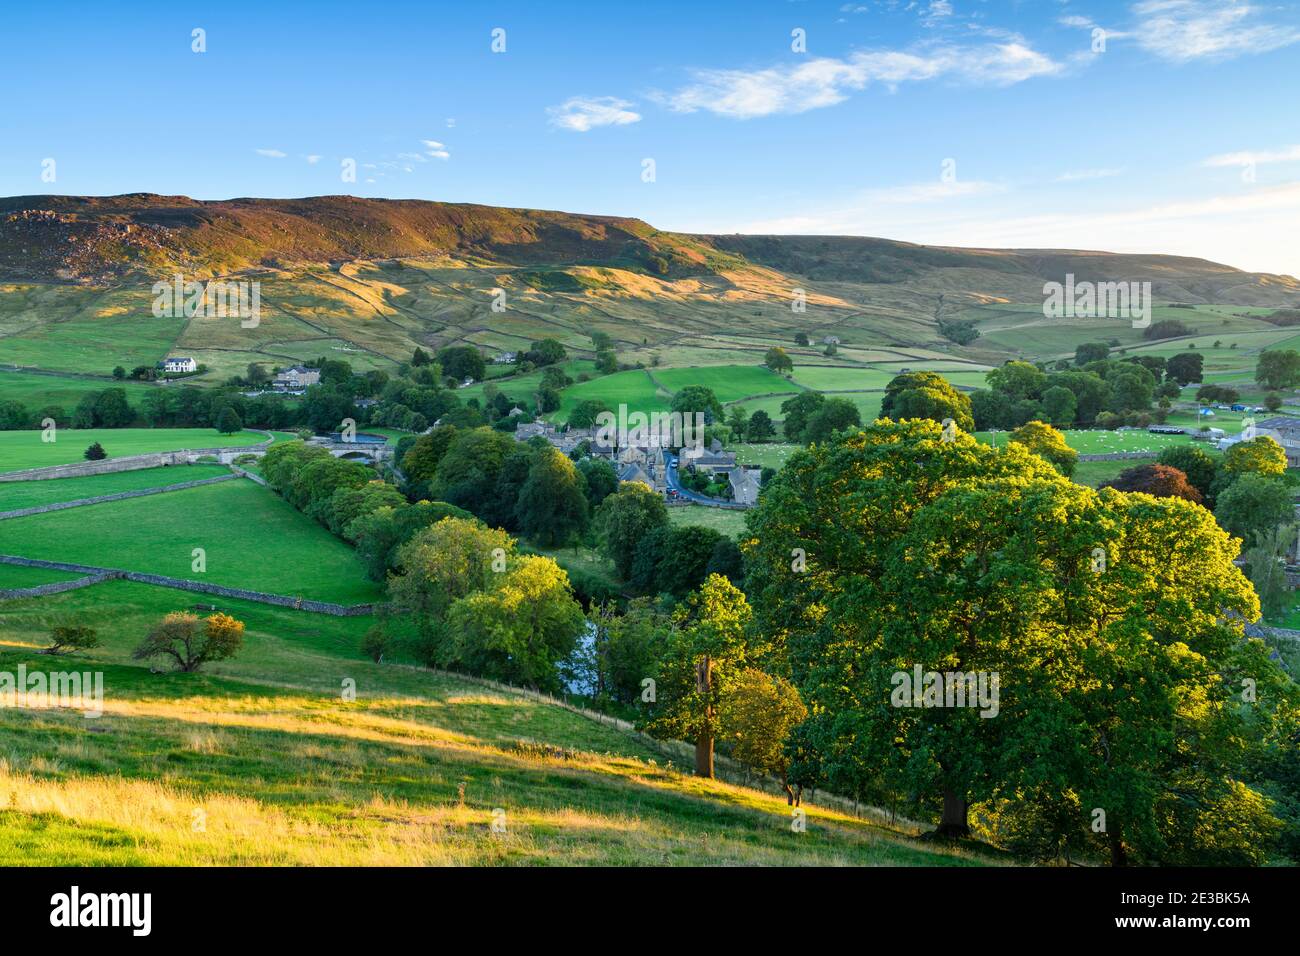 Scenic Sunny Burnsall villaggio nella valle del fiume Wharfe (pendii collinari, alta brughiera, campi verdi, pascoli, cielo blu) - Yorkshire Dales, Inghilterra, UK Foto Stock